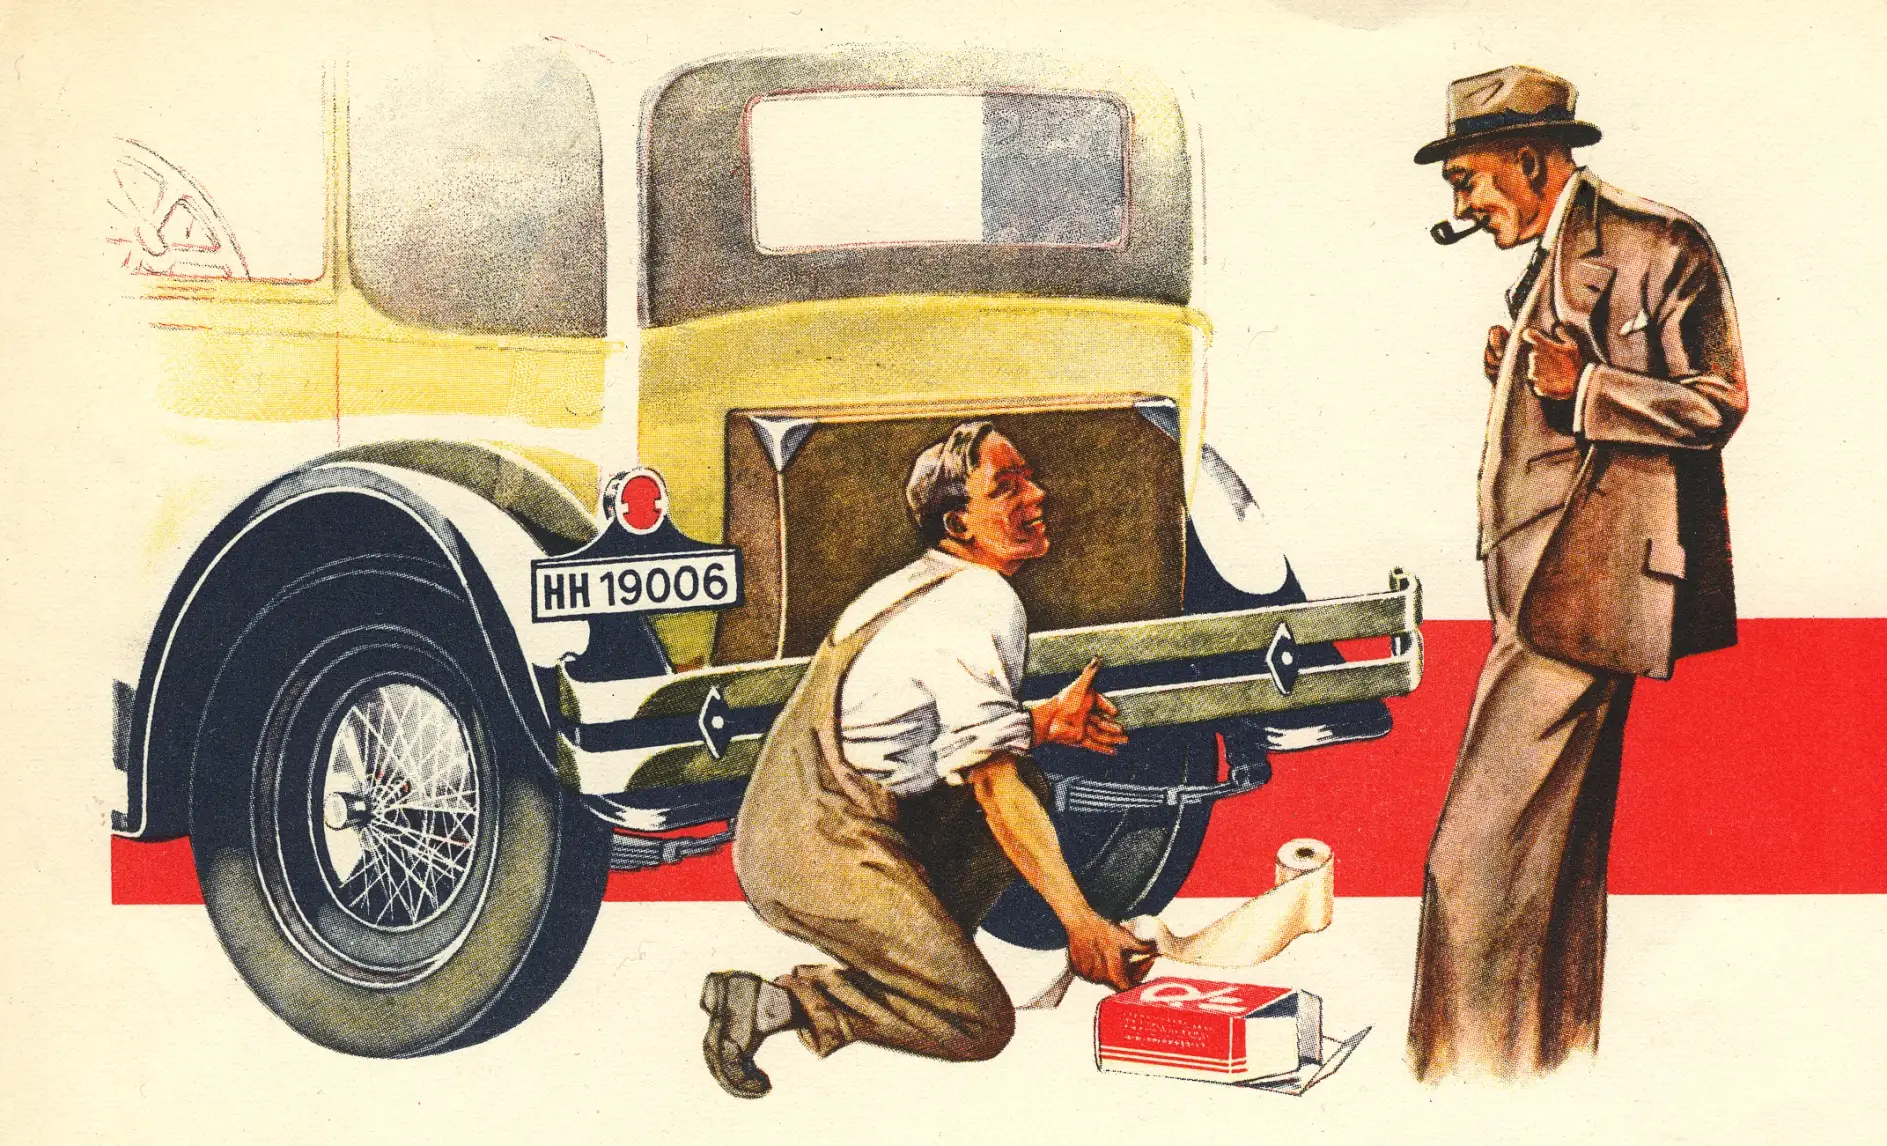 Já na década de 1930, as fitas adesivas da Beiersdorf ajudaram a estender a vida útil das molas dos carros.